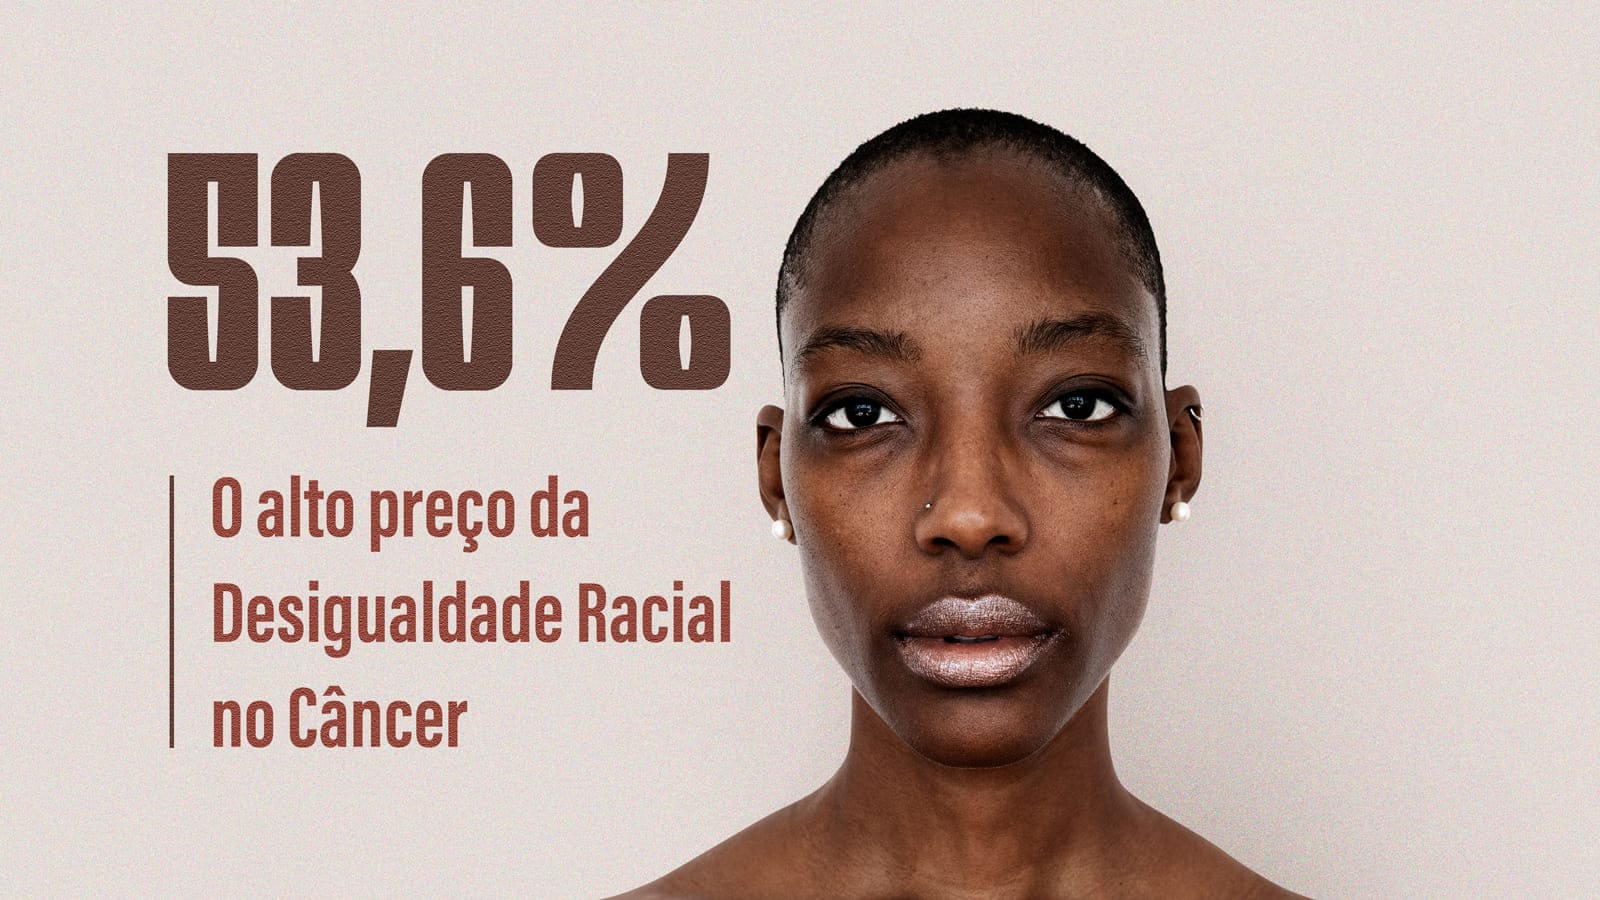 O rosto de uma mulher negra com cabelos raspados ao lado de um texto destacando que mulheres negras com câncer do colo do útero têm mortalidade maior que outras.